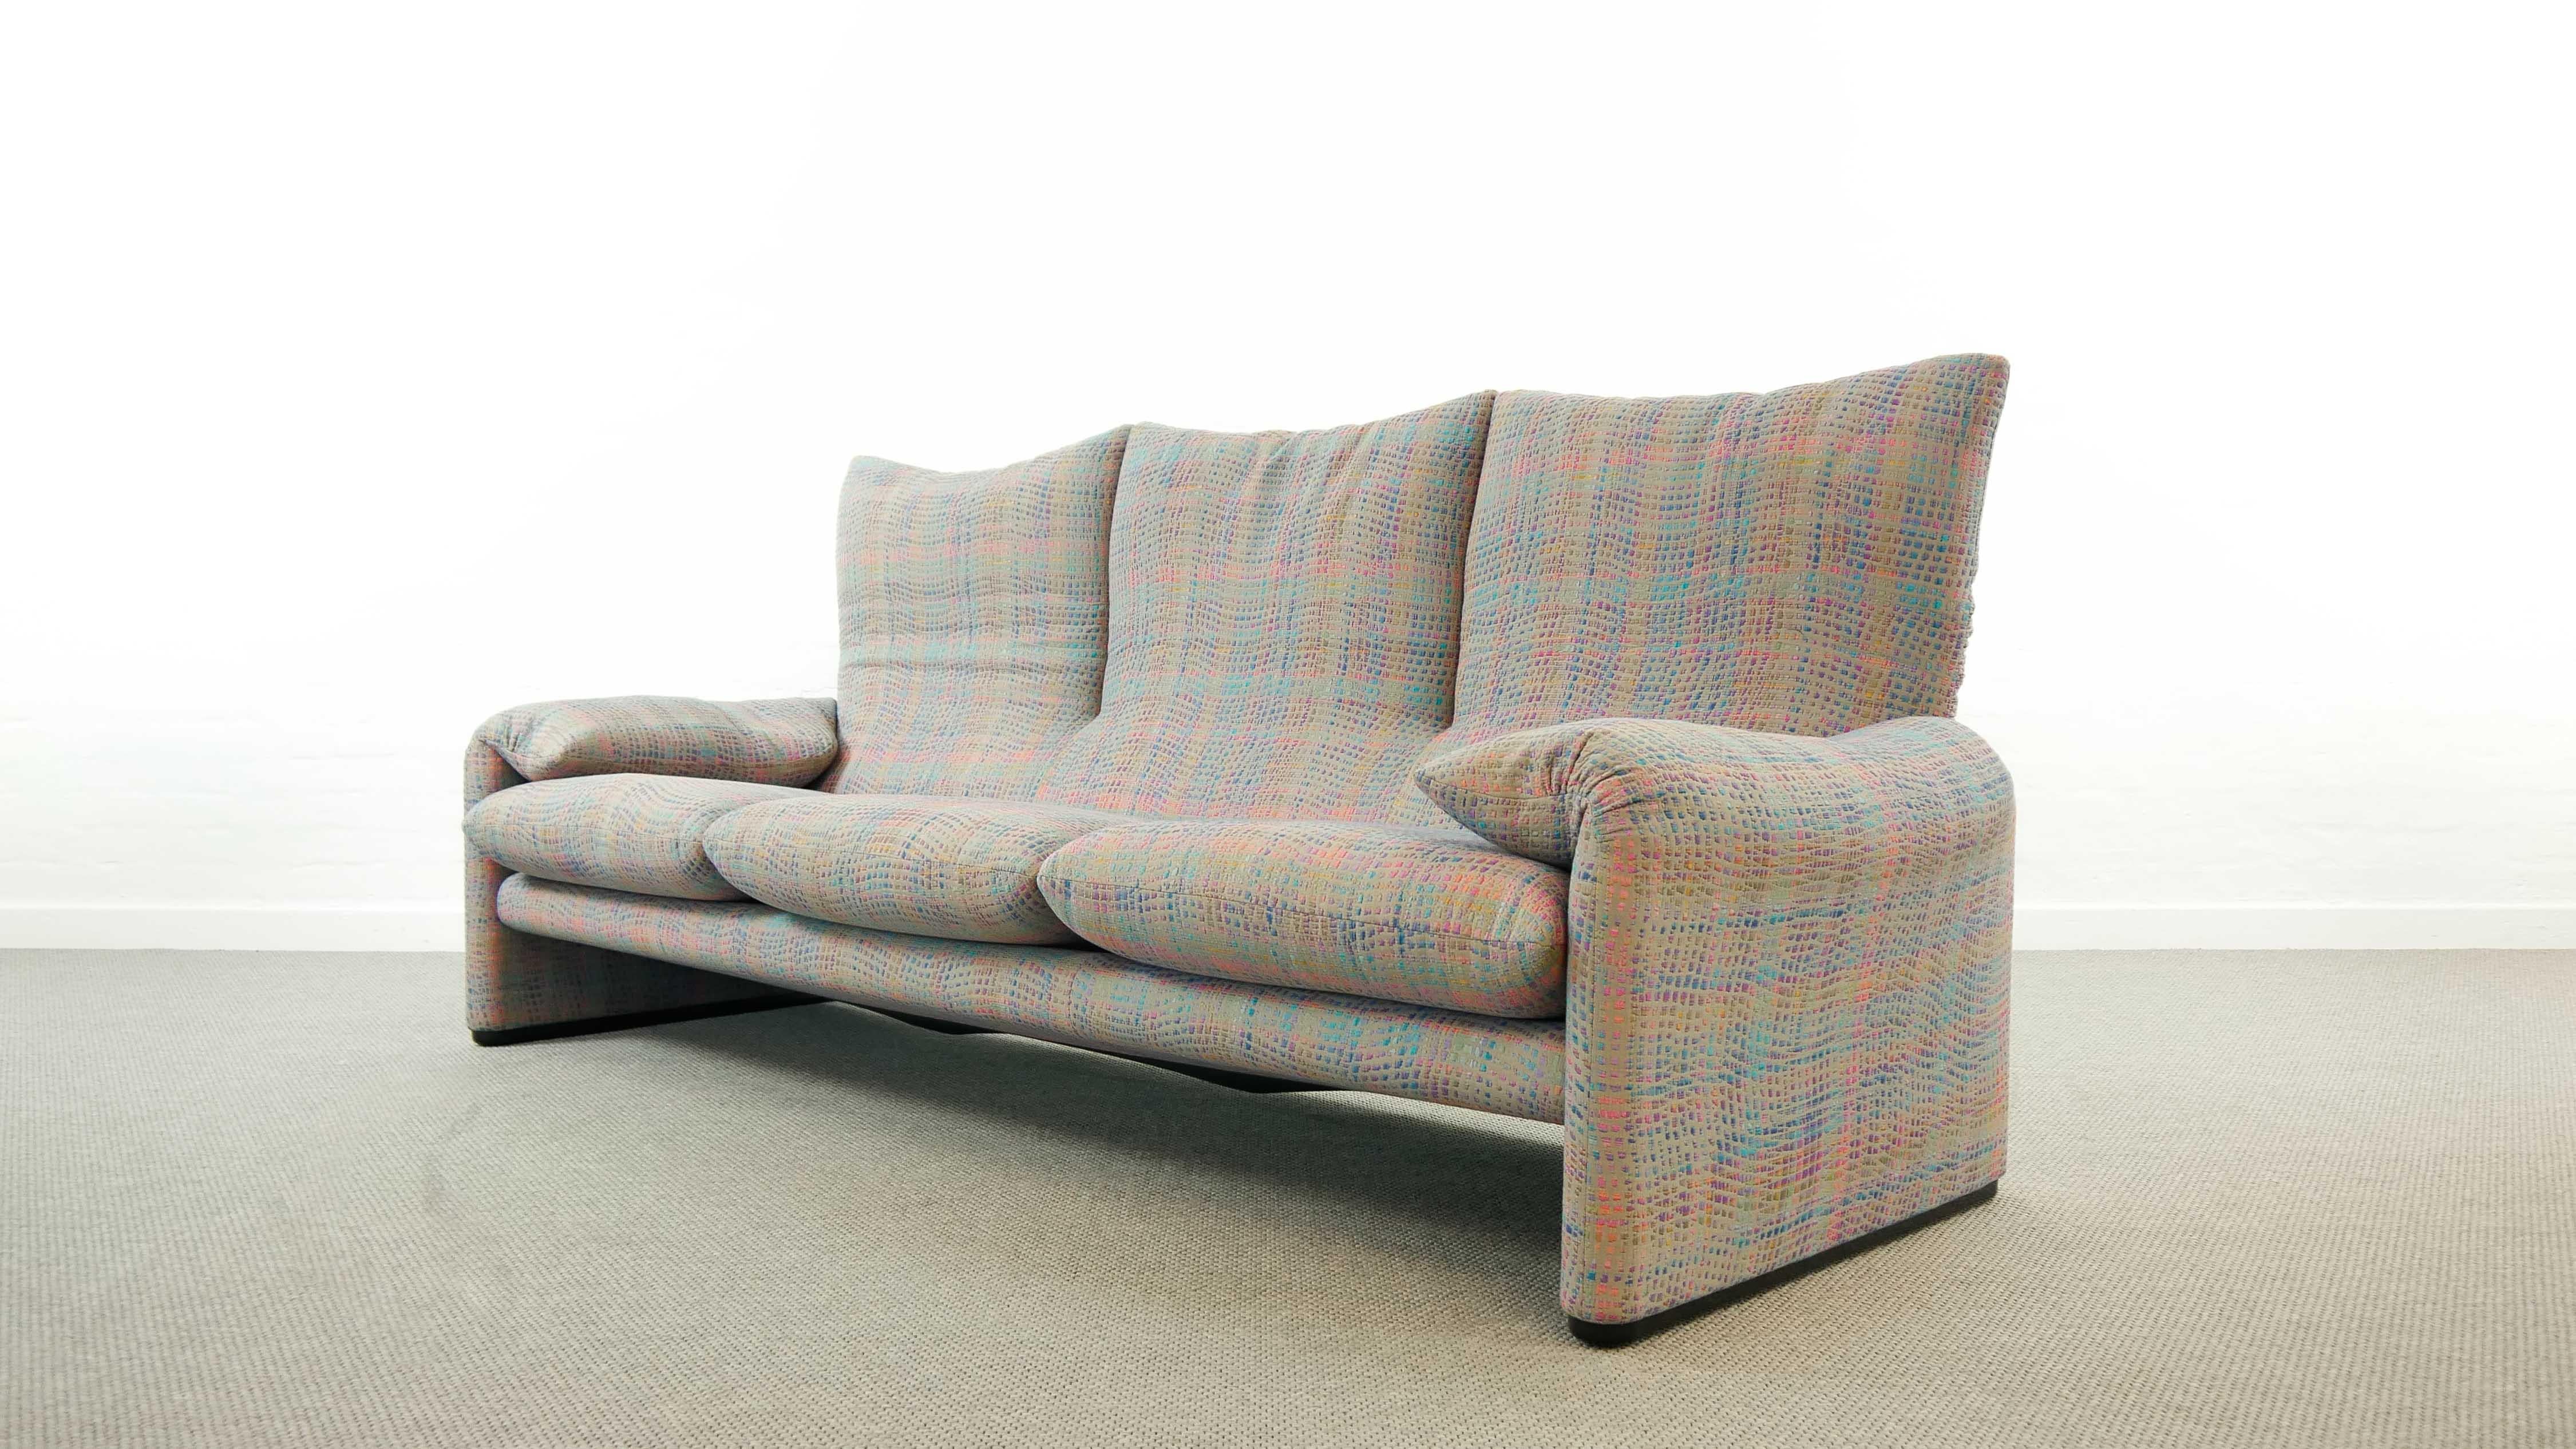 Maralunga 3-Seat Sofa by Vico Magistretti for Cassina in Grey-Multicolore Fabric 4